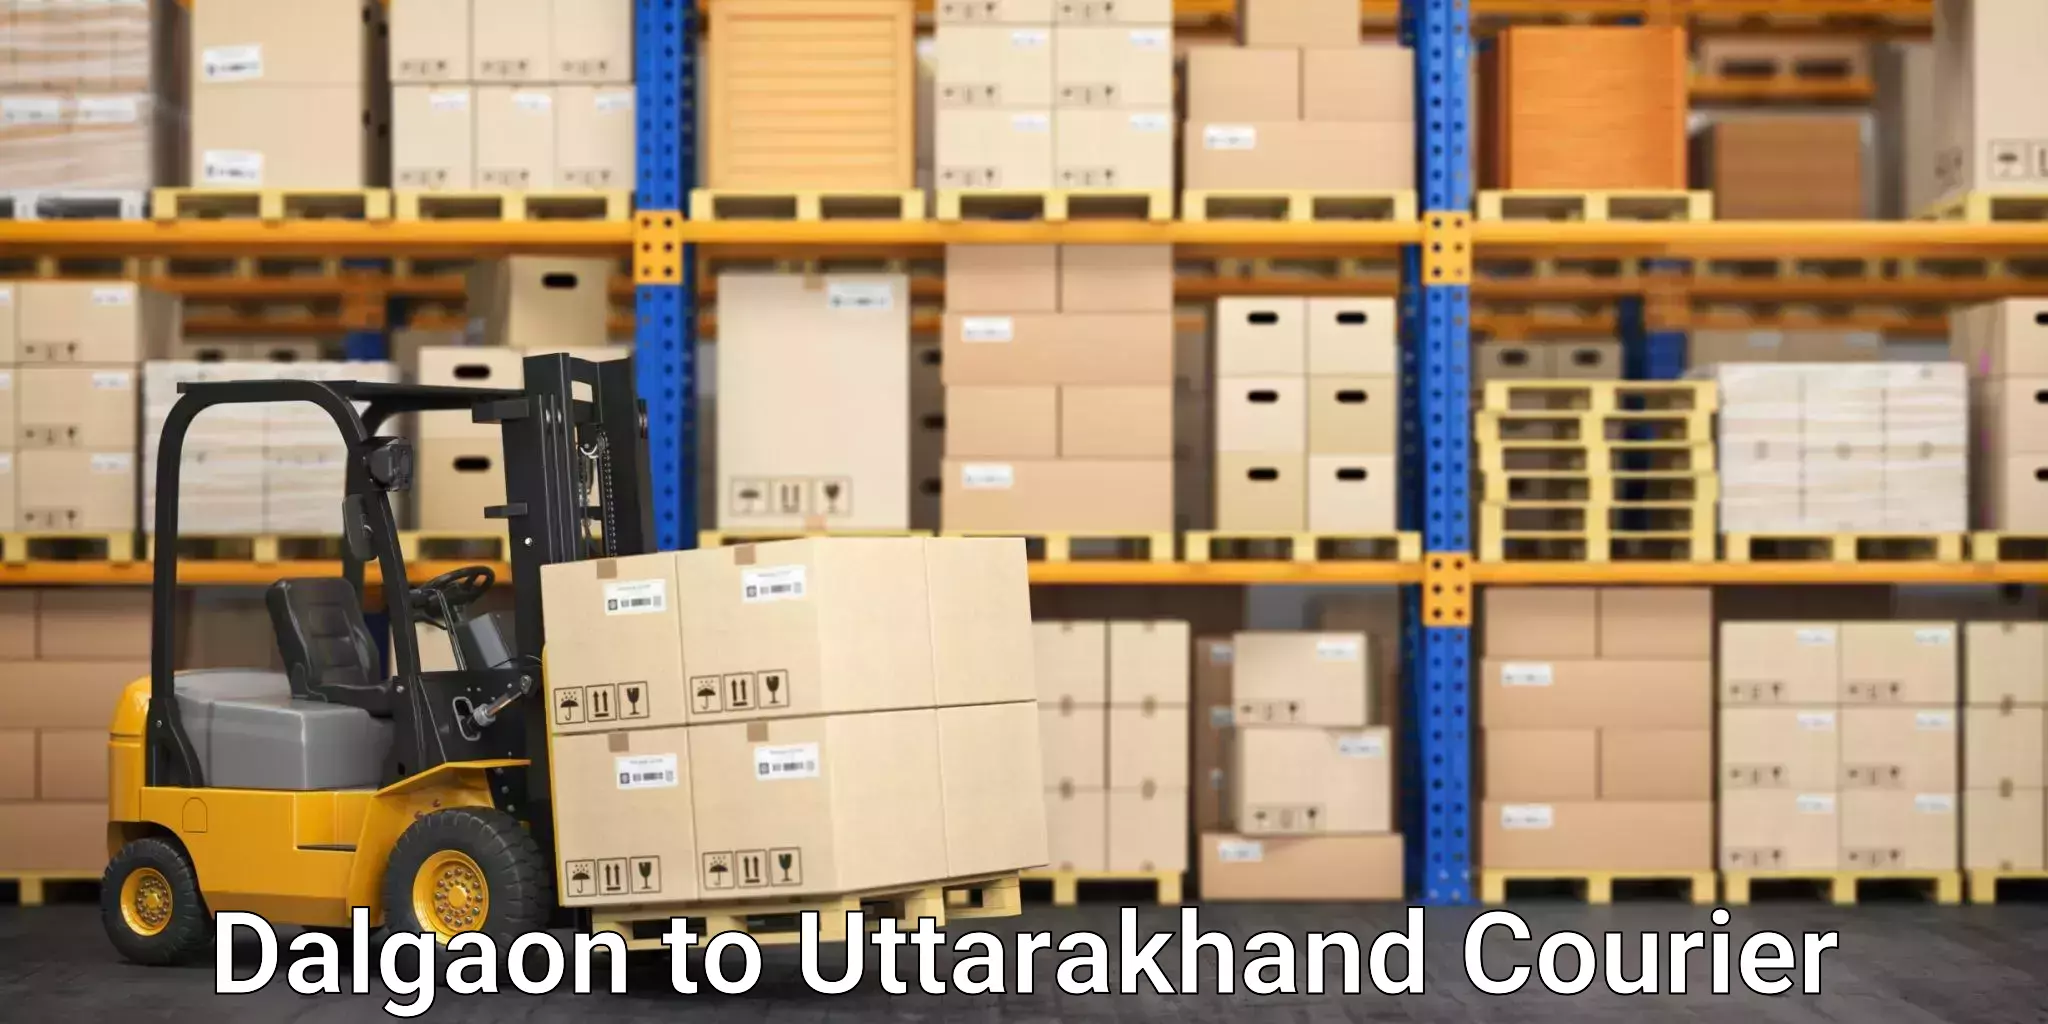 Quality courier partnerships Dalgaon to Uttarakhand